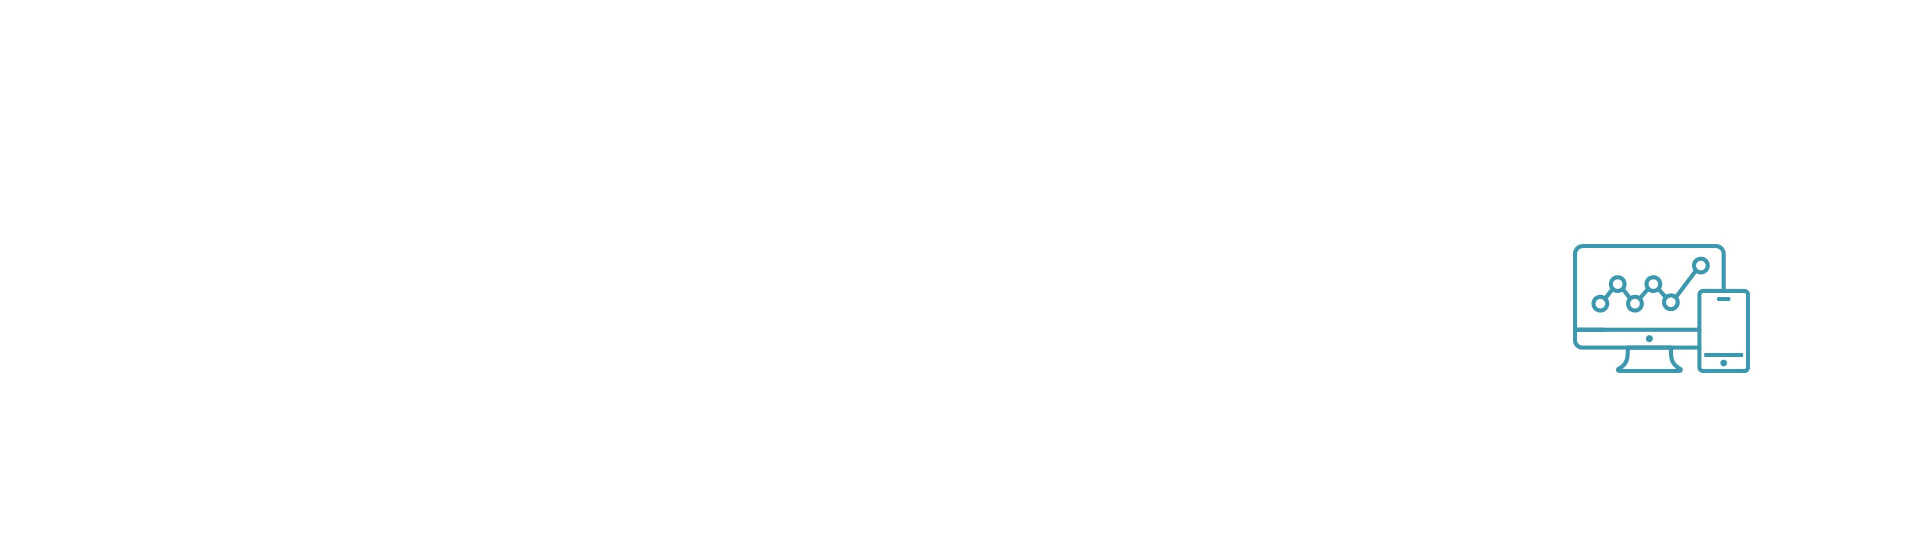 Analytics explainer